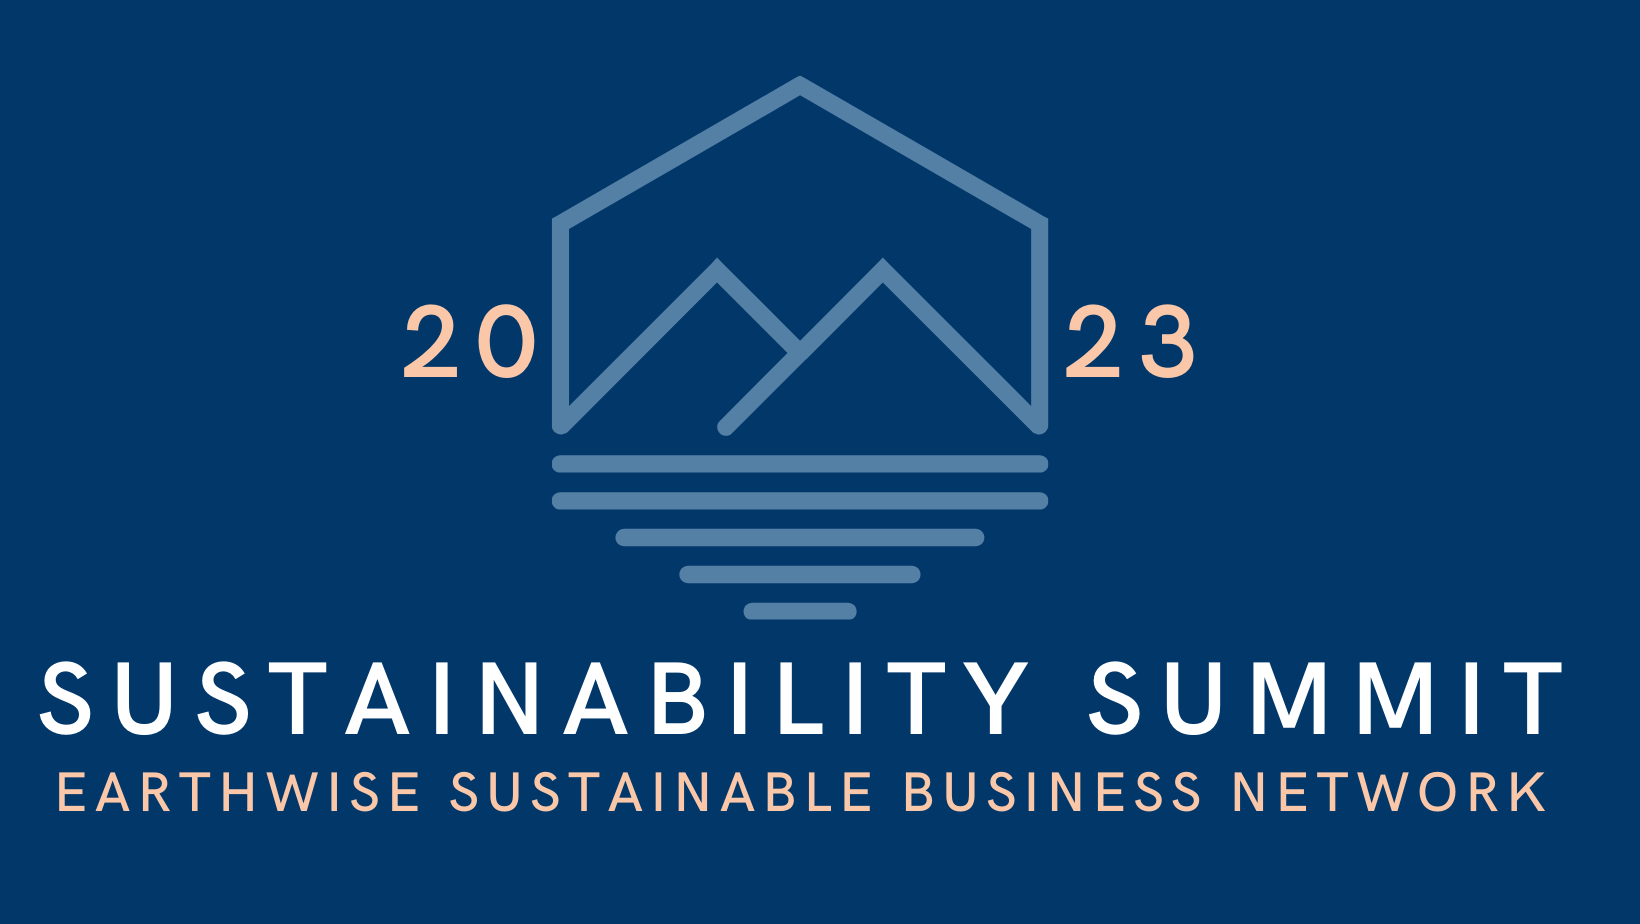 Sustainability Summit 2023